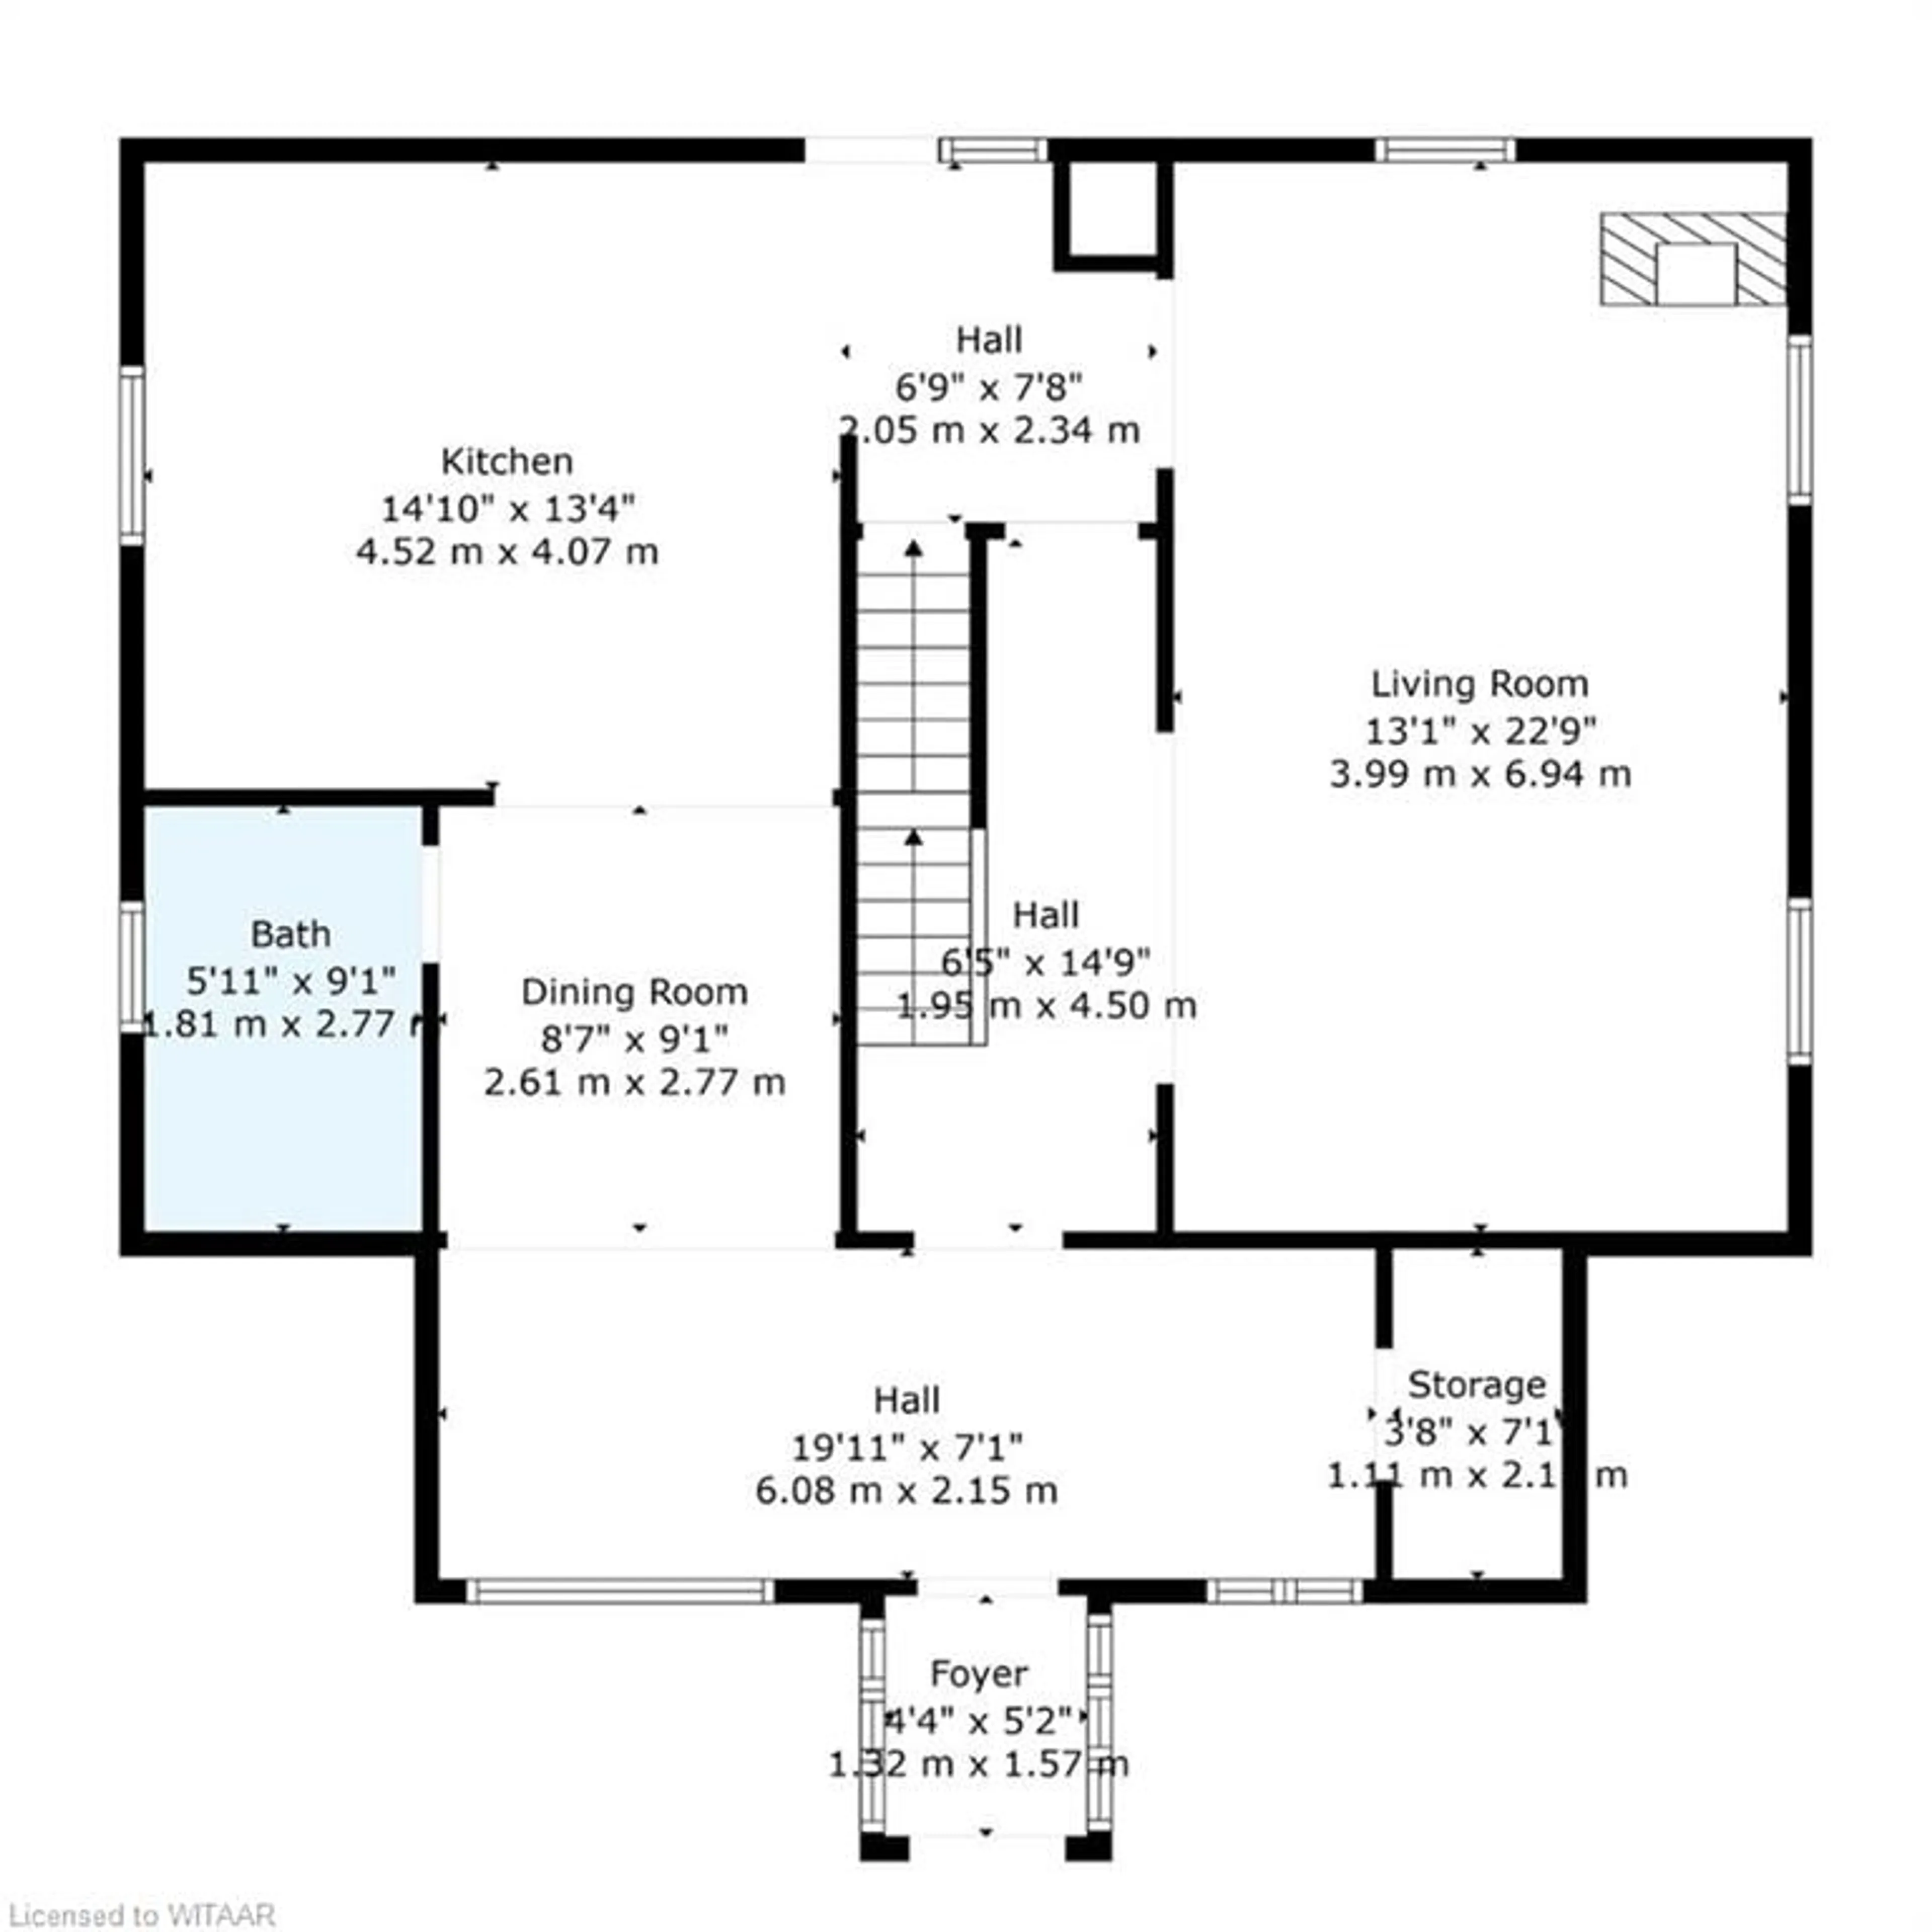 Floor plan for 45 Isabella St, Plattsville Ontario L7C 1N7